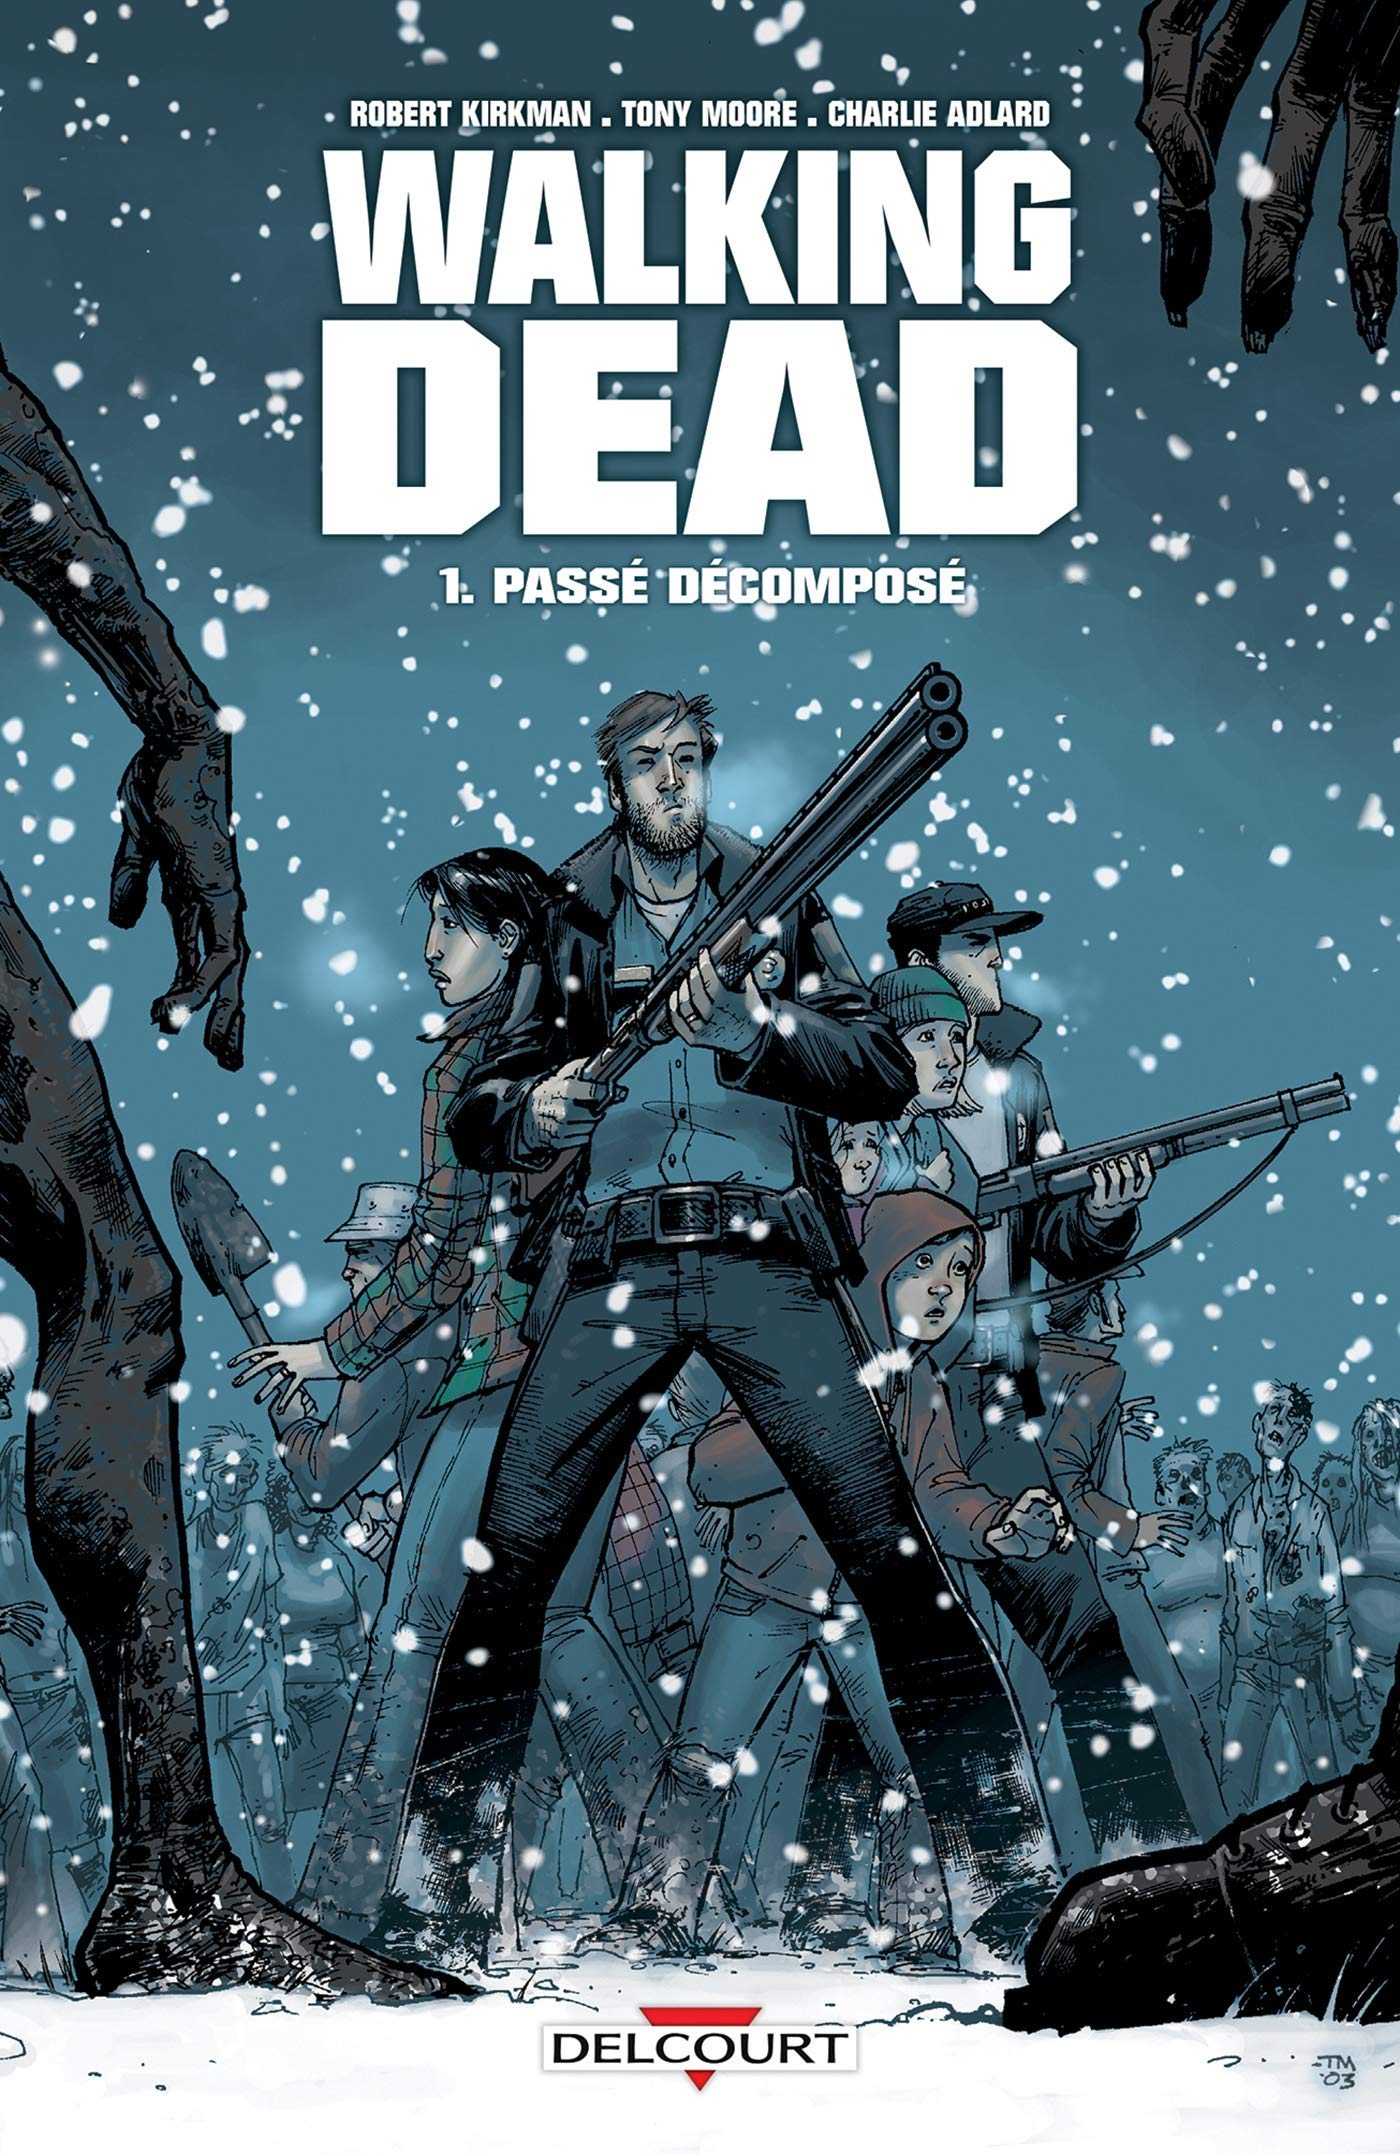 The Walking Dead, Tome 1., "Passé Décomposé" (2007) écrit par Robert Kirkman et illustré par Tony Moore et Charlie Adlard